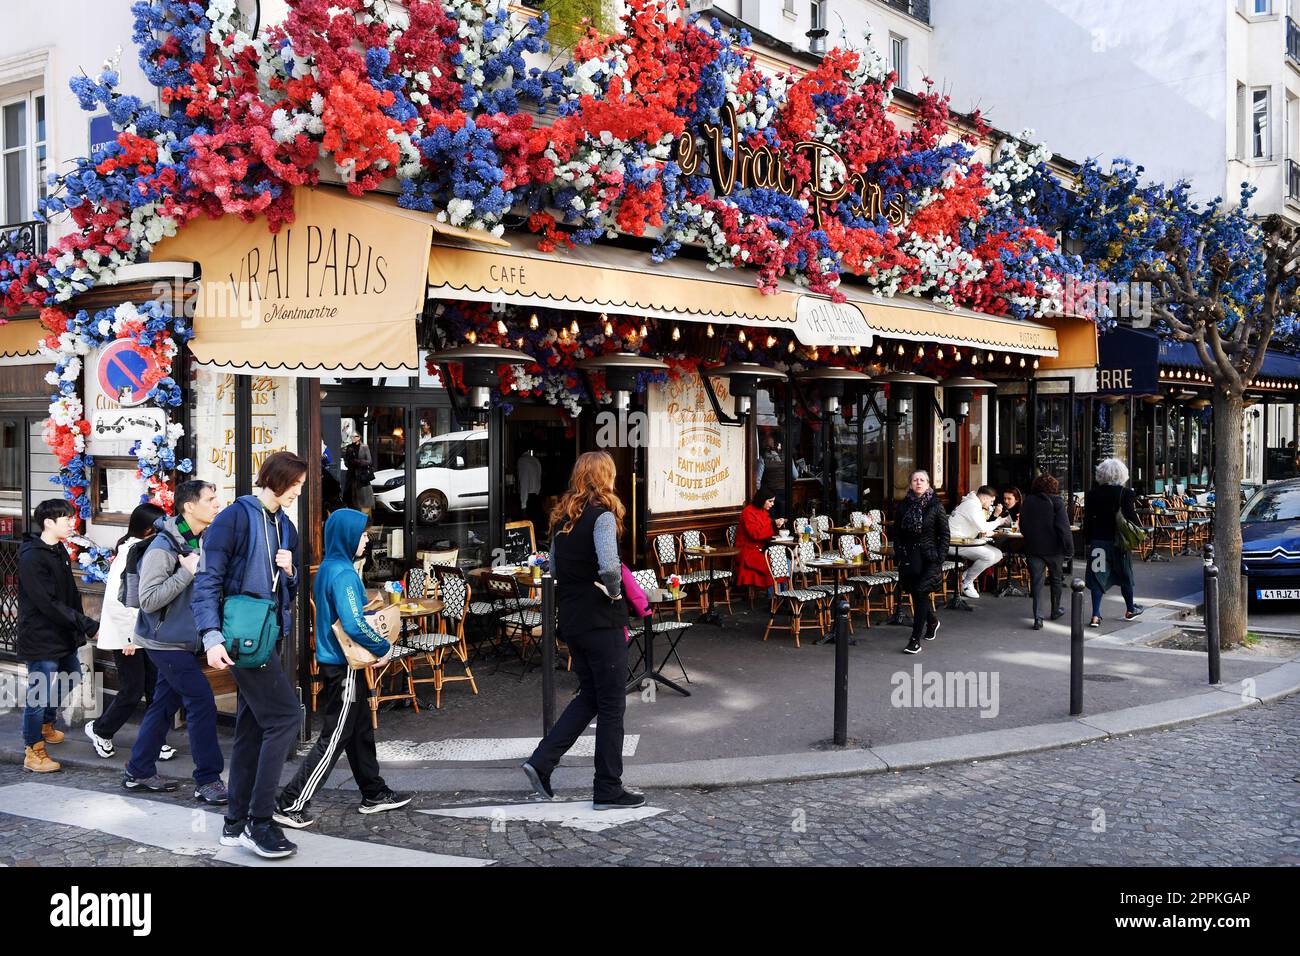 Le Vrai Paris Café - Rue des Abbesses - Montmartre - Paris - France Stock Photo